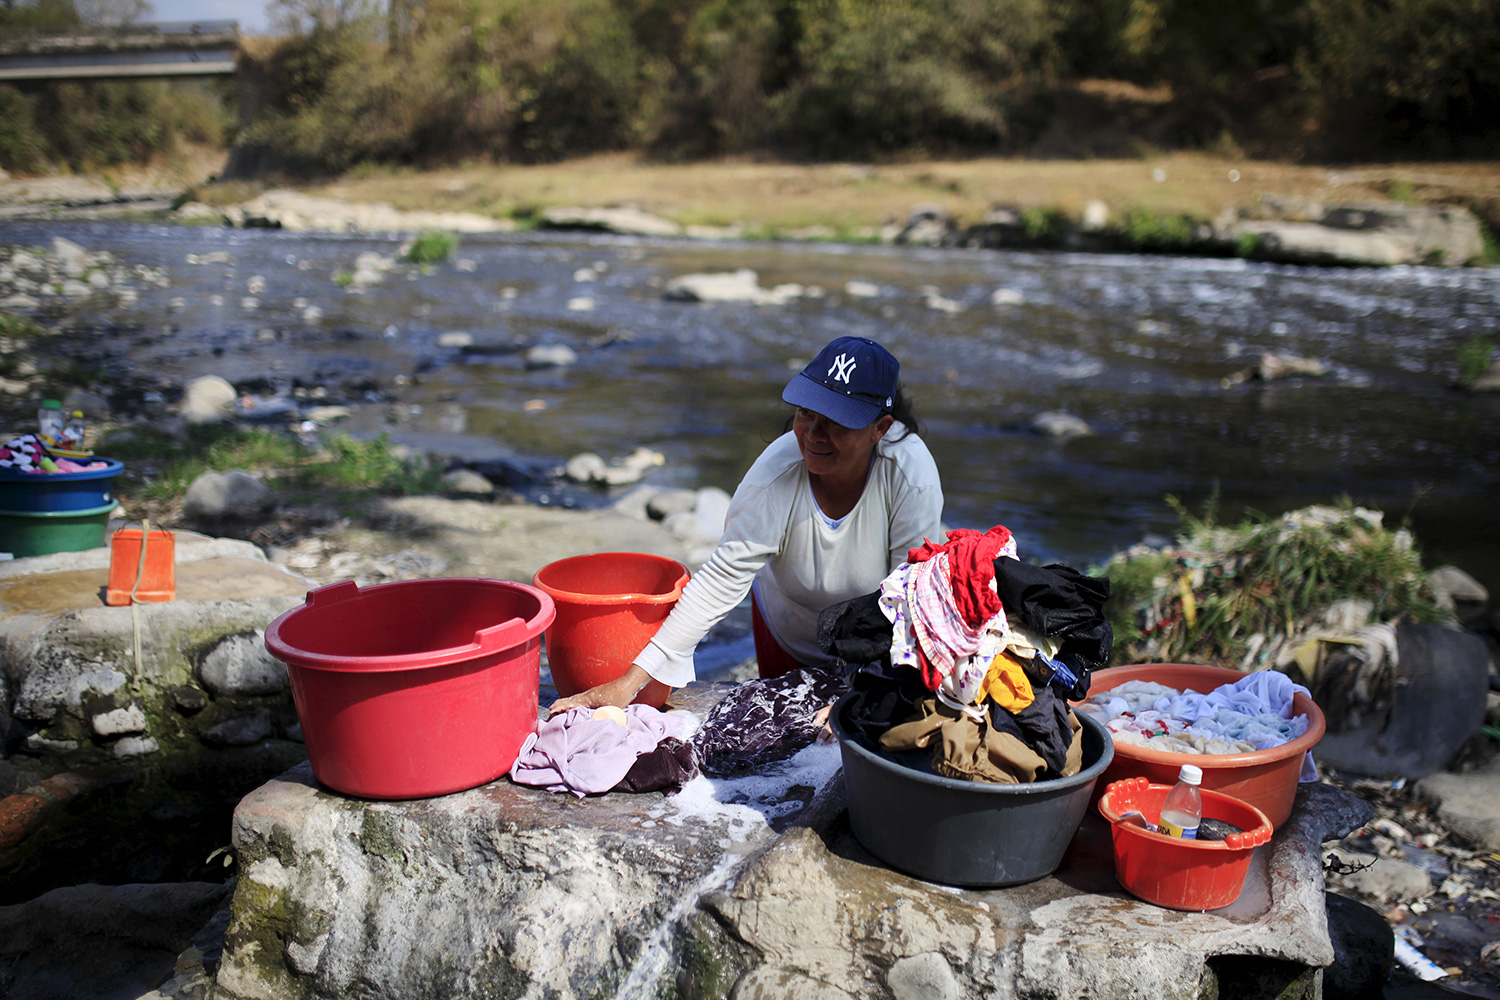 La falta de agua hará inviable vivir en El Salvador en 80 años